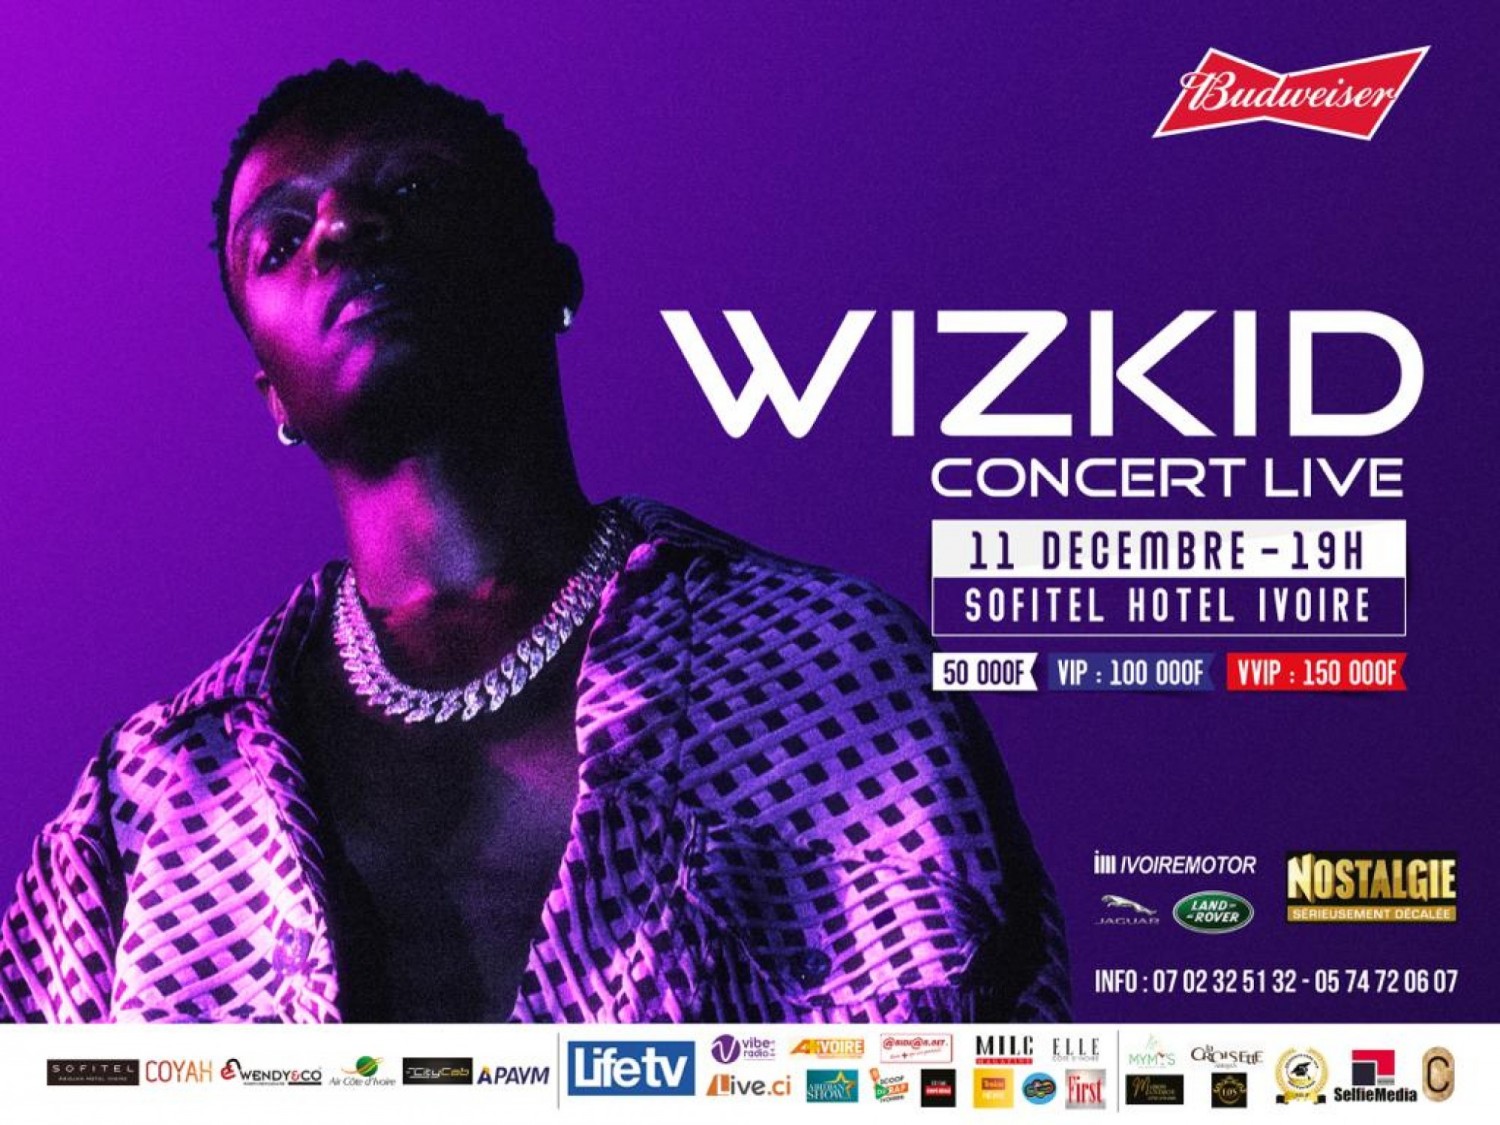 Côte d'Ivoire : Concert manqué de Wizkid à Abidjan, les spectateurs invités à se rendre à leur point d'achat respectif pour se faire rembourser jusqu'au 23 décembre